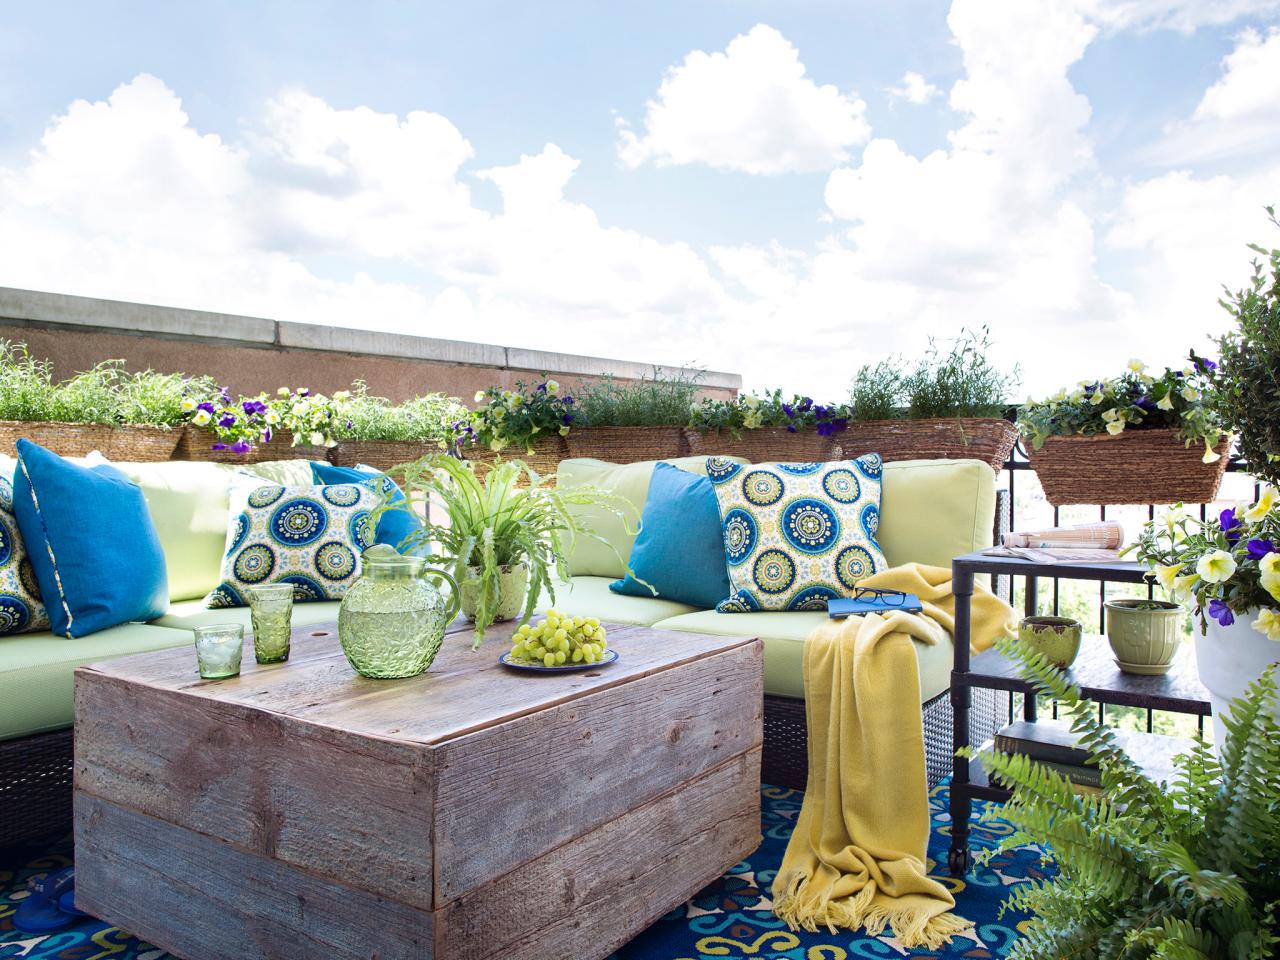 déco idée pas cher jardin canapé table bois naturel écolo sympa vert bleu mobilier extérieur